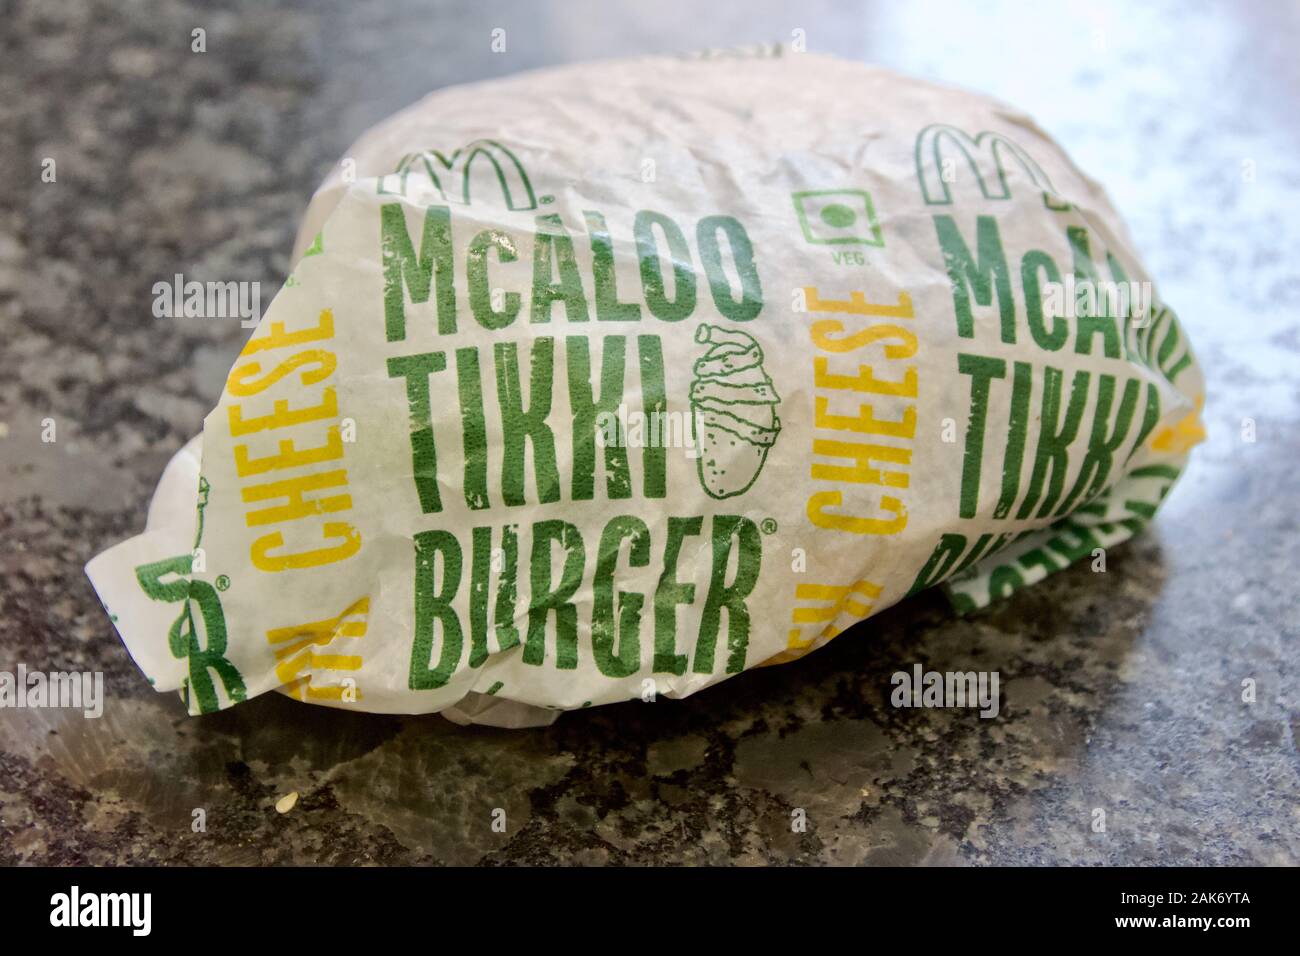 A vegetarian McAloo Tikki Burger from McDonalds in India Stock Photo